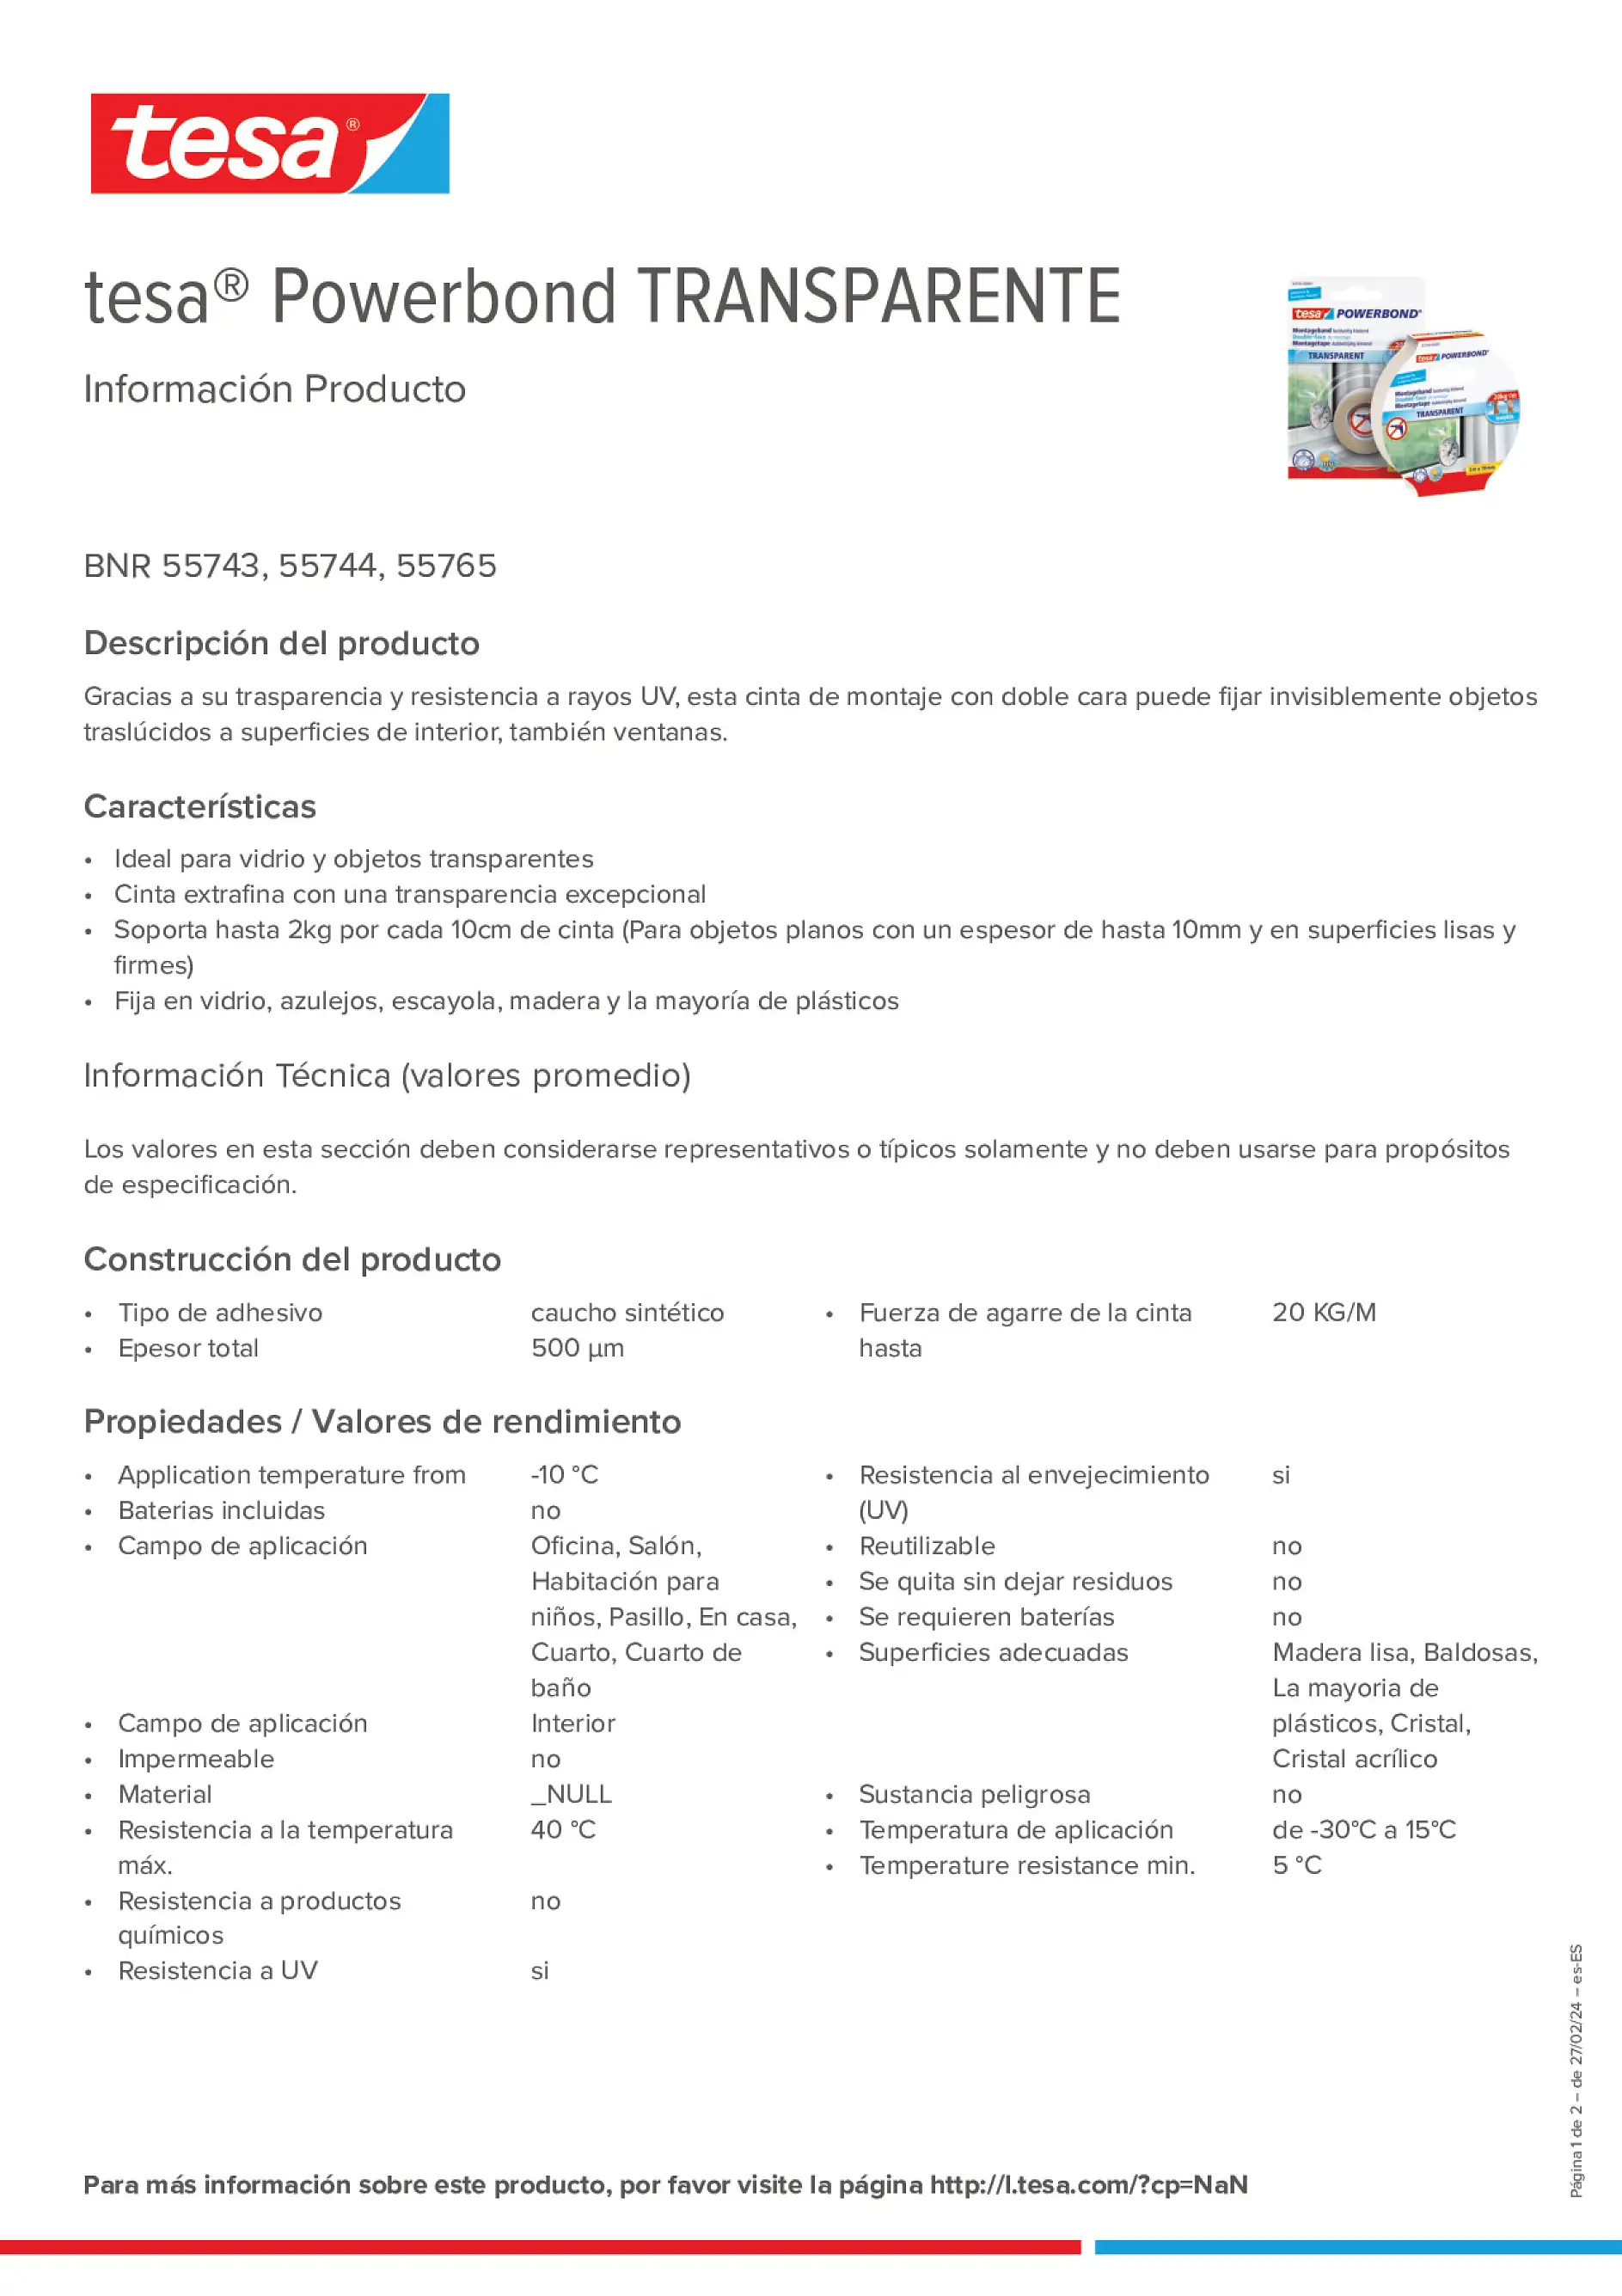 Product information_tesa® Powerbond 55744_es-ES